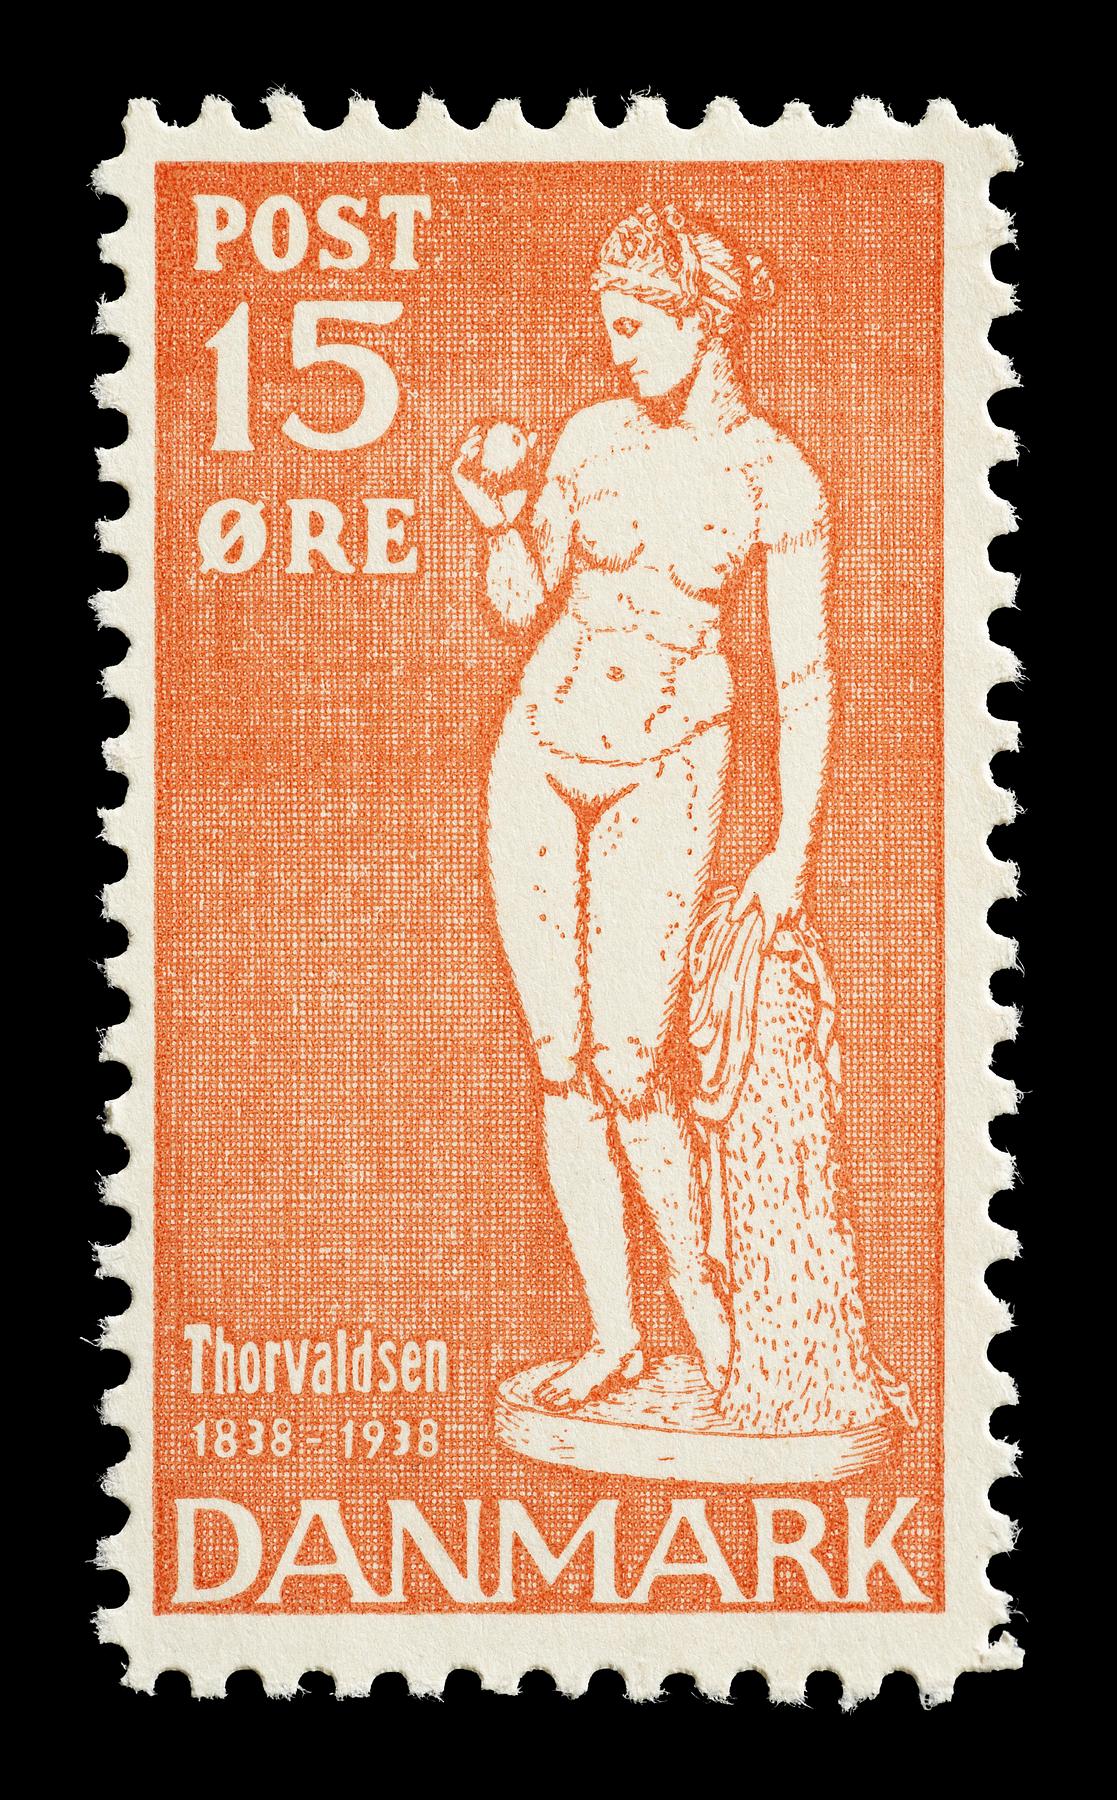 Prøvetryk af udkast til et dansk frimærke med Thorvaldsens Venus med æblet, E2341,20